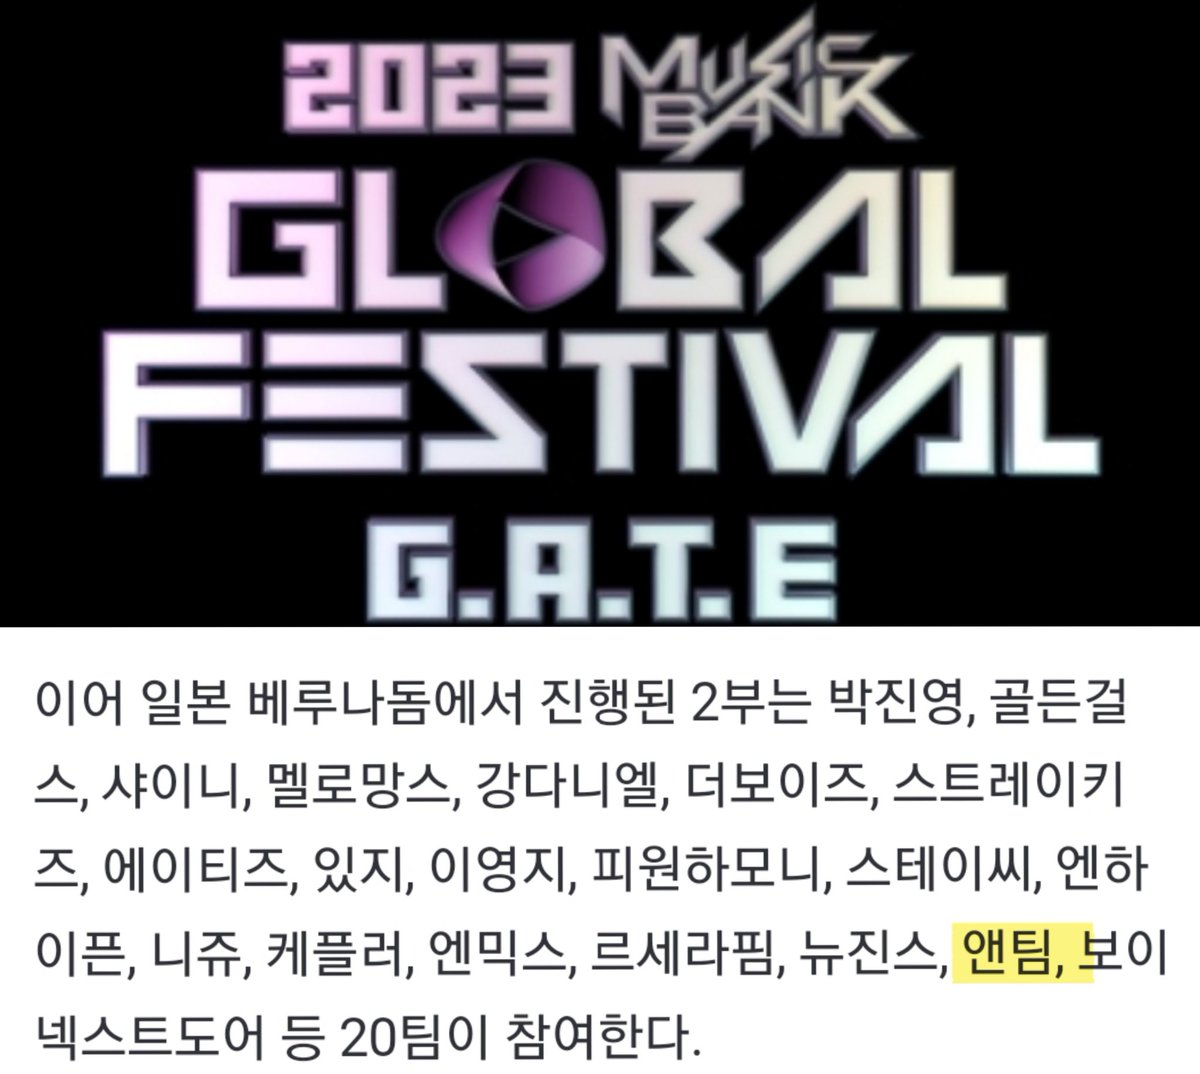 12/15 20時半 KBS 
2023MUSIC BANK GLOBAL FESTIVAL G.A.T.E
#andTEAM  #앤팀